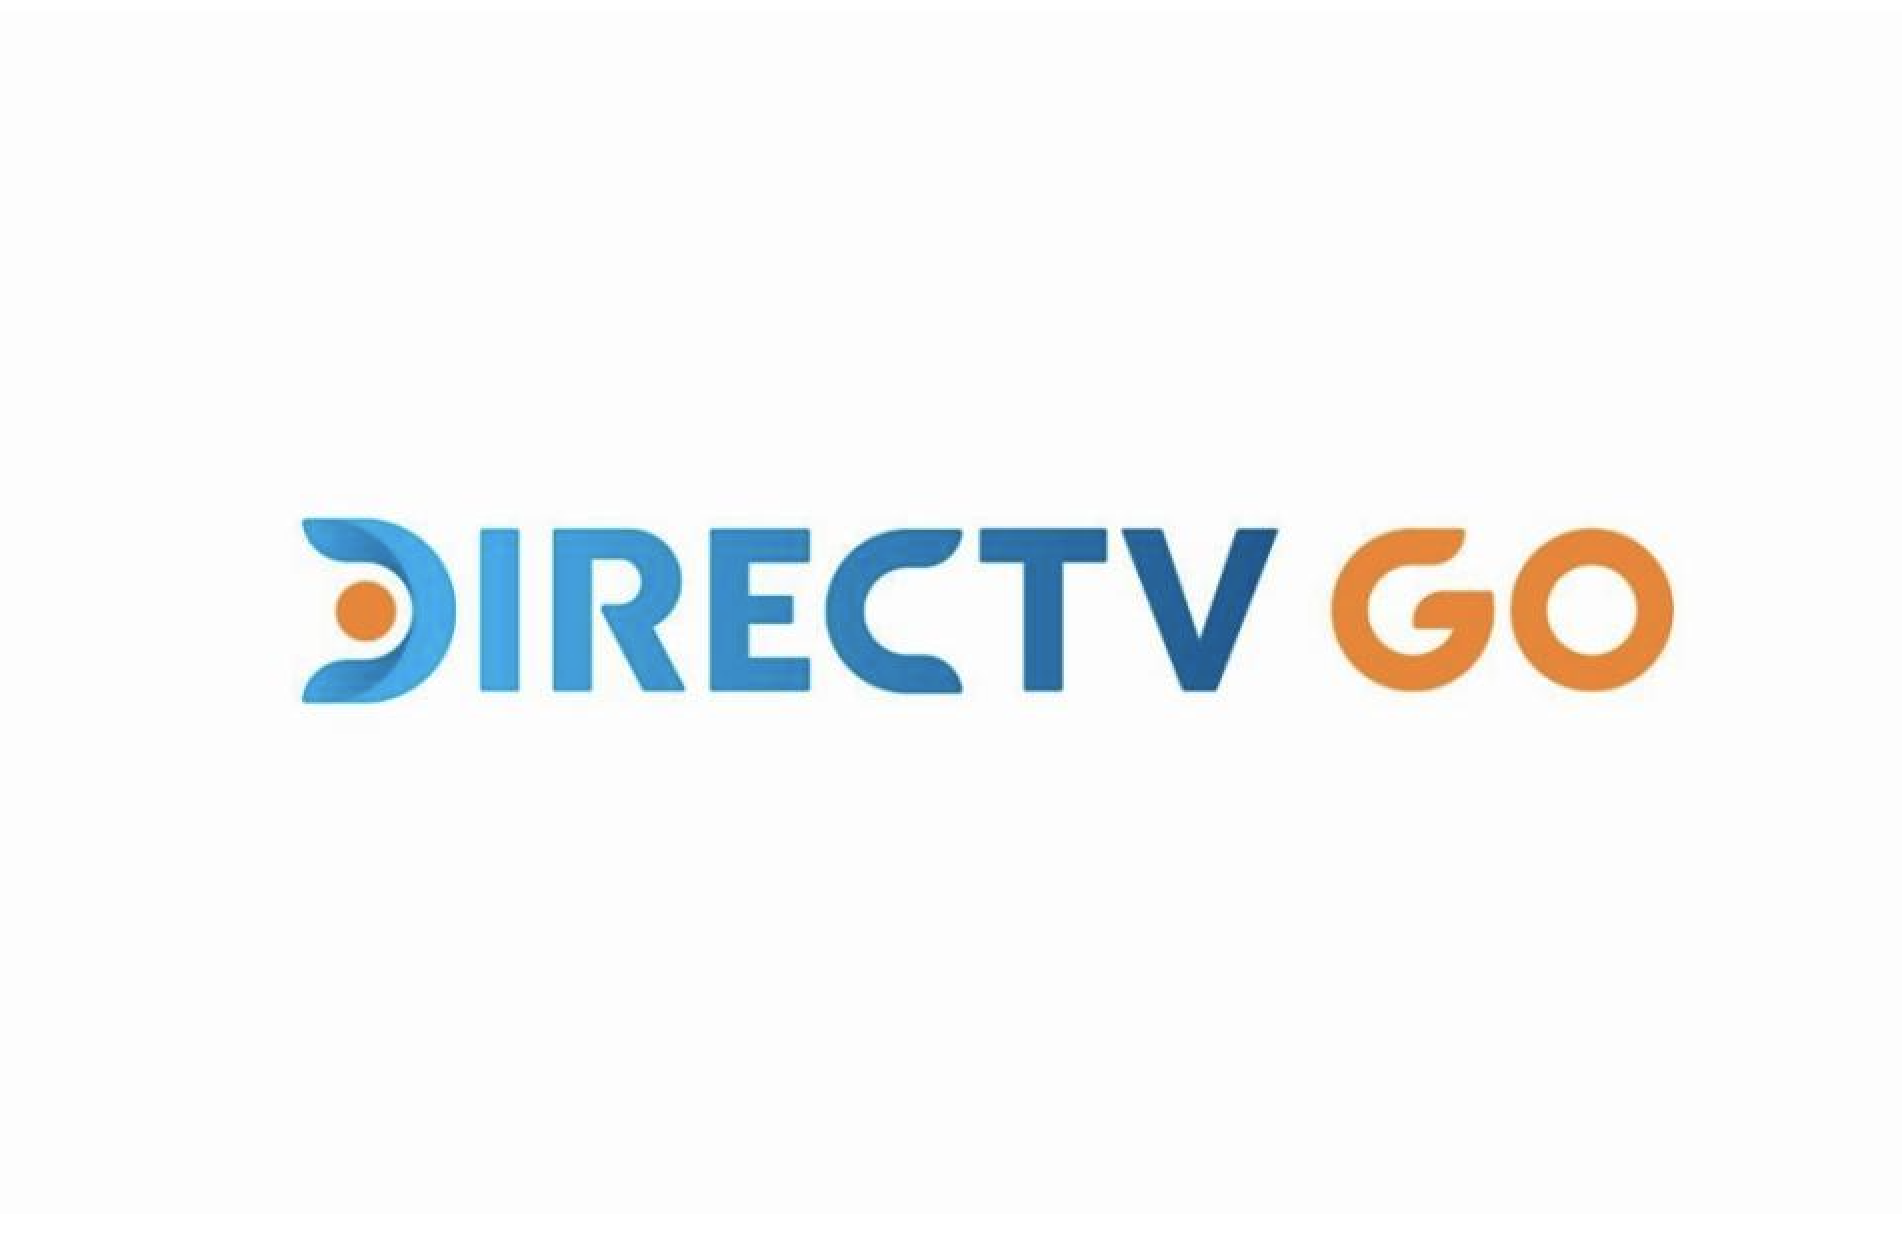 Vrio Corp anunció el lanzamiento de DIRECTV GO en Brasil, y en Argentina a partir del 17 de diciembre. Se trata de una plataforma de streaming única.